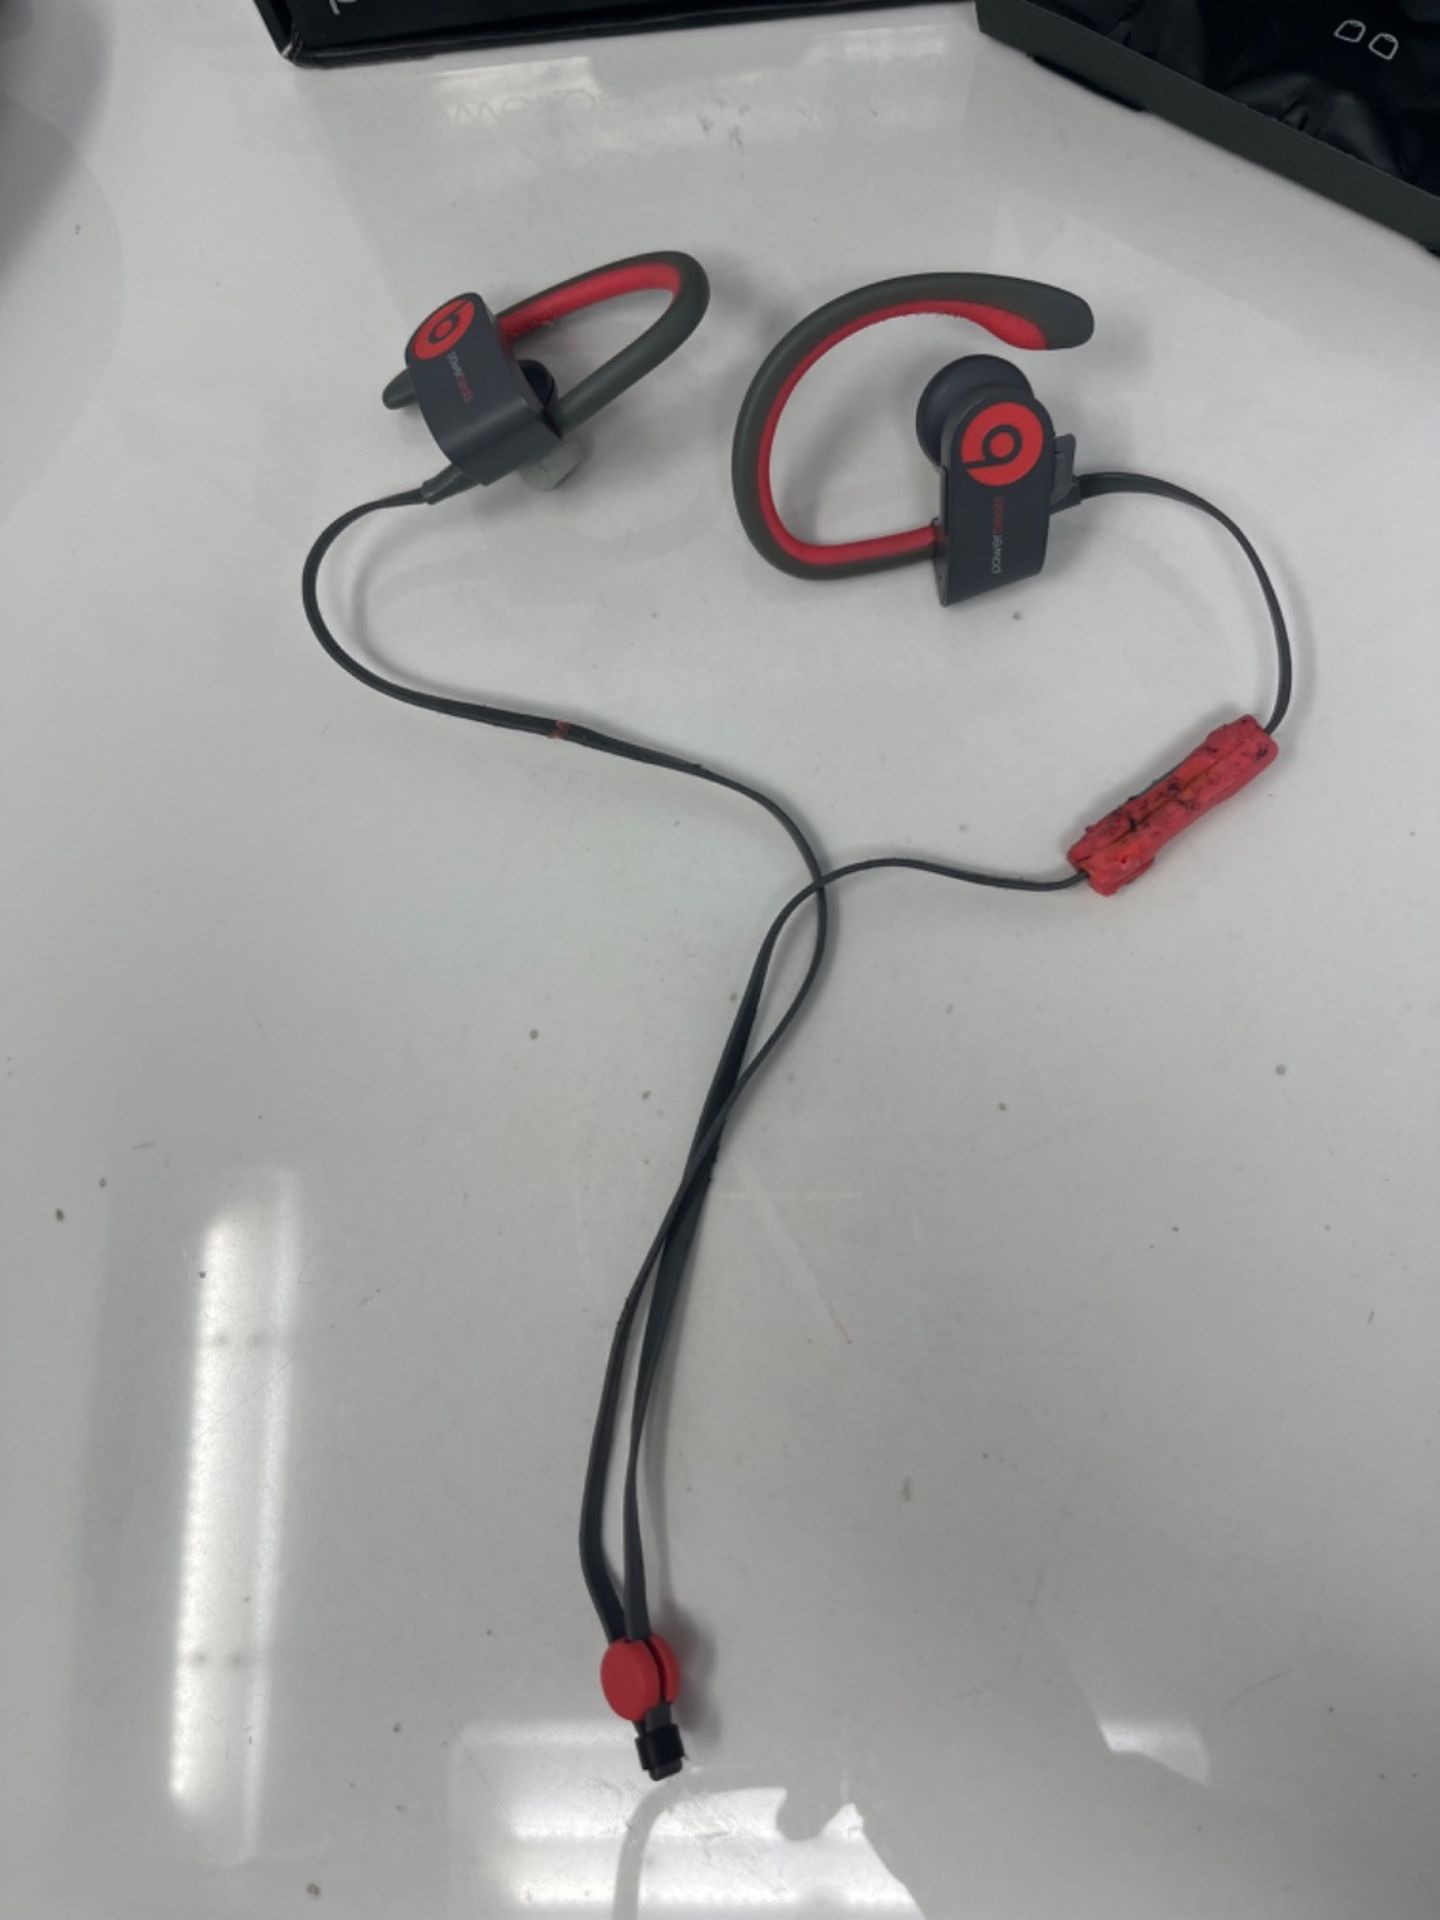 RRP £169.00 Powerbeats 2 Wireless In-Ear Headphone - Siren Red - Image 3 of 3